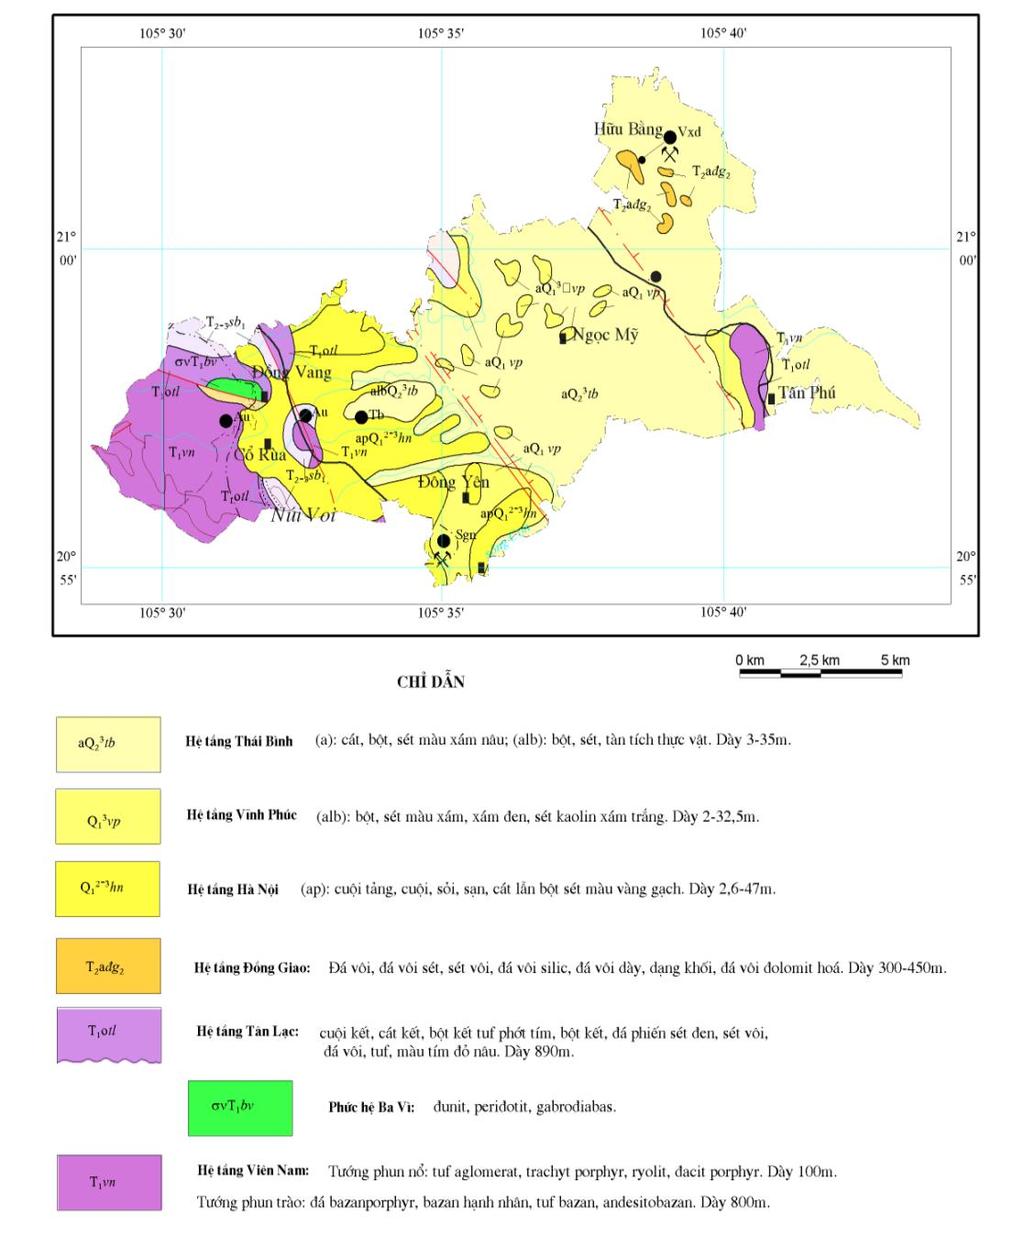 Hệ tầng Vĩnh Phúc (Q 1 3b vp) Hệ tầng Thái Bình (Q 2 3 tb) Hình 2.4. Bản đồ địa chất huyện Quốc Oai 2.2.2. Đặc điểm thạch học Theo tài liệu Nghiên cứu địa mạo và địa chất khu vực huyện Quốc Oai của PGS.